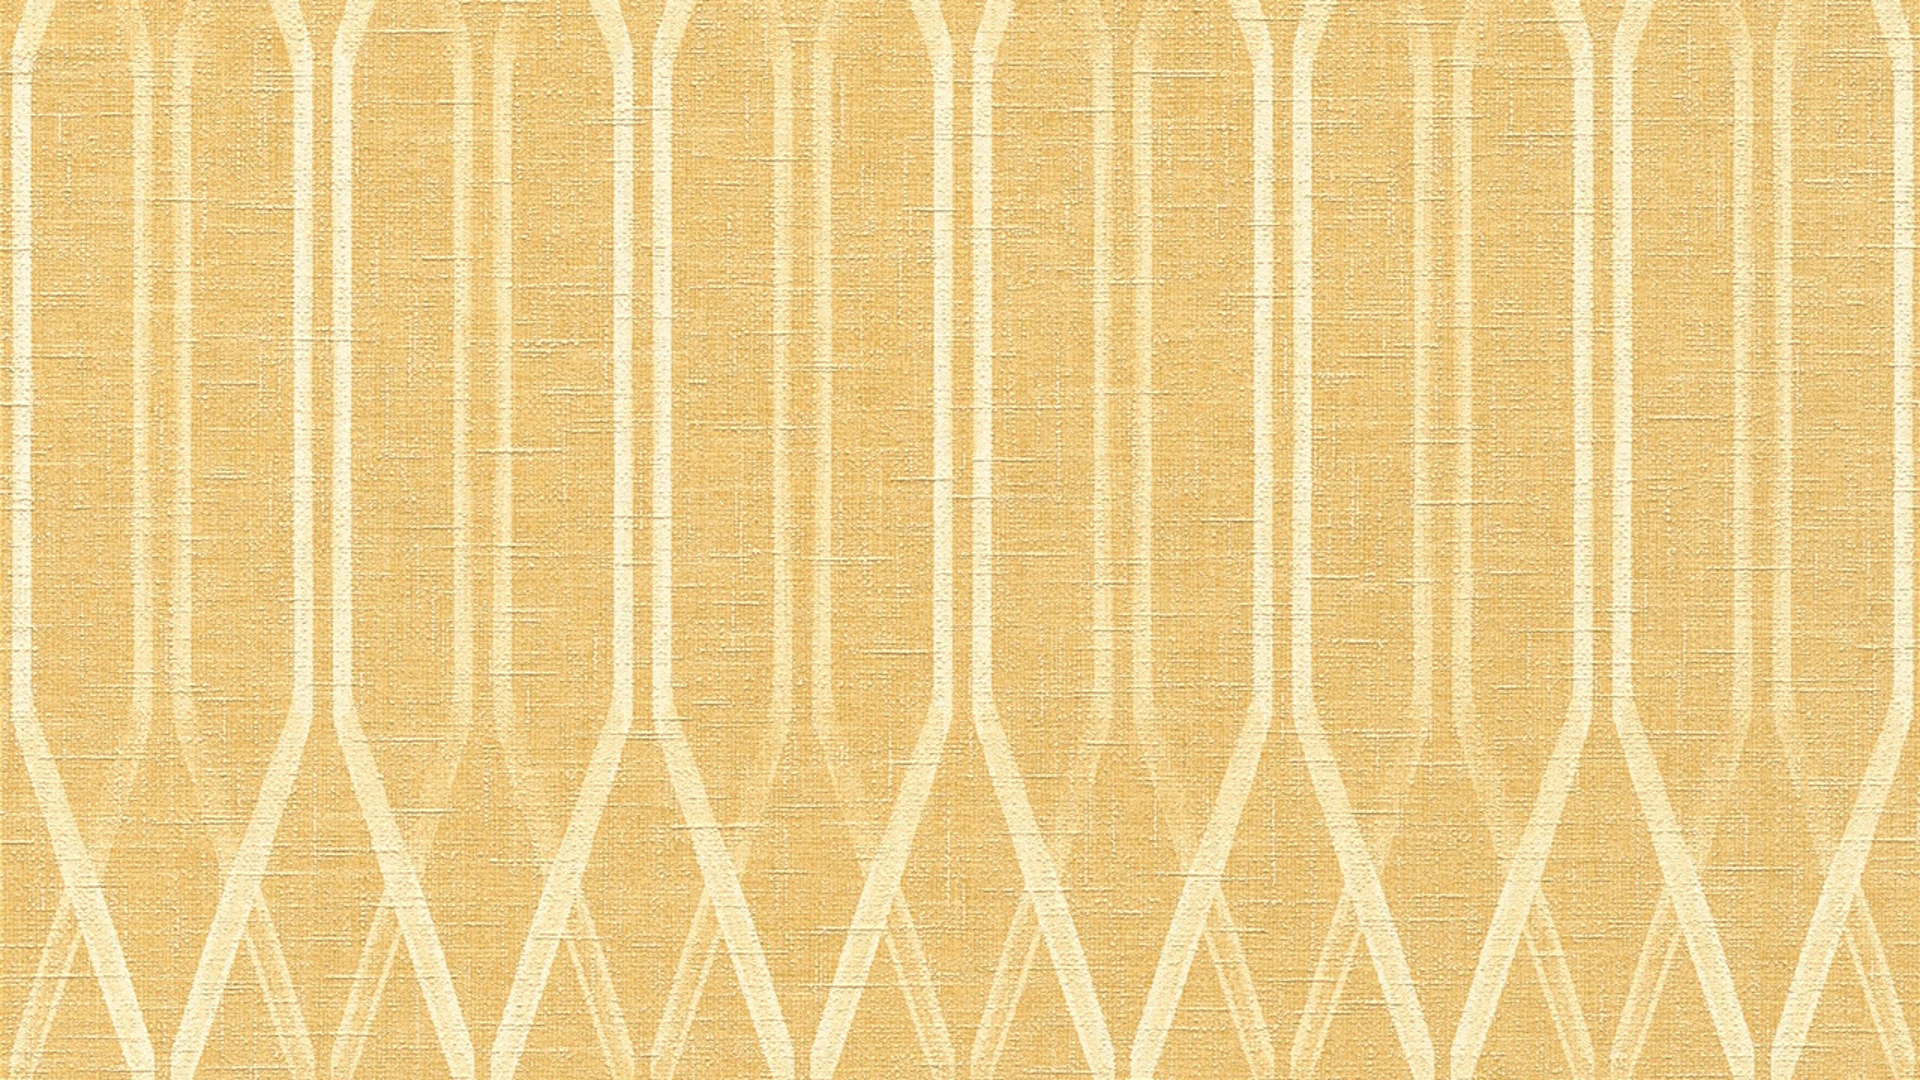 Vinyltapete gelb Modern Landhaus Streifen Ornamente Linen Style 323